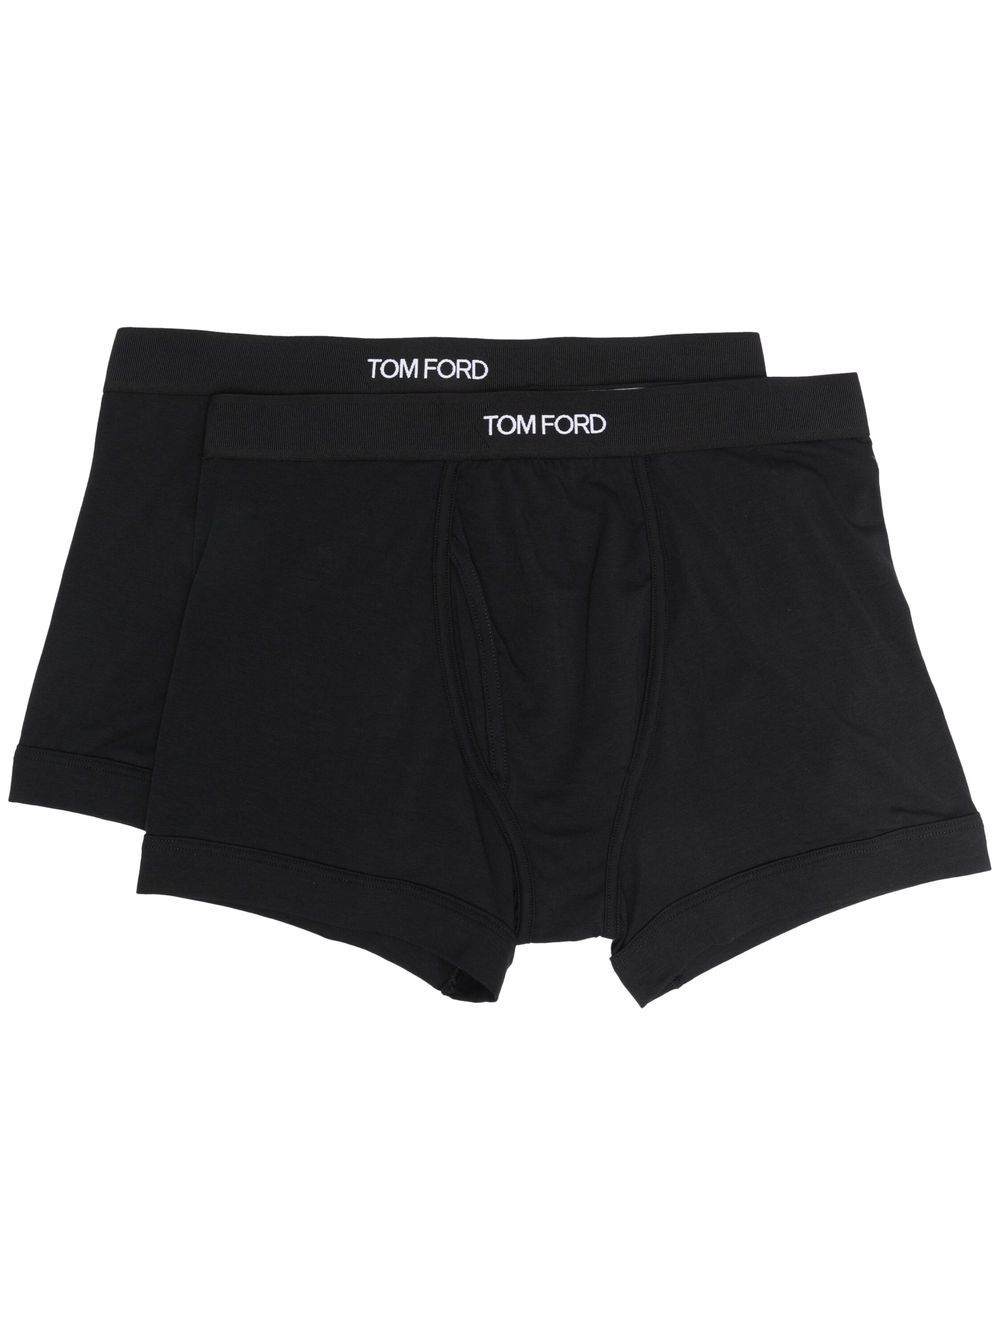 TOM FORD logo-waistband boxer briefs (set of 2) - Black